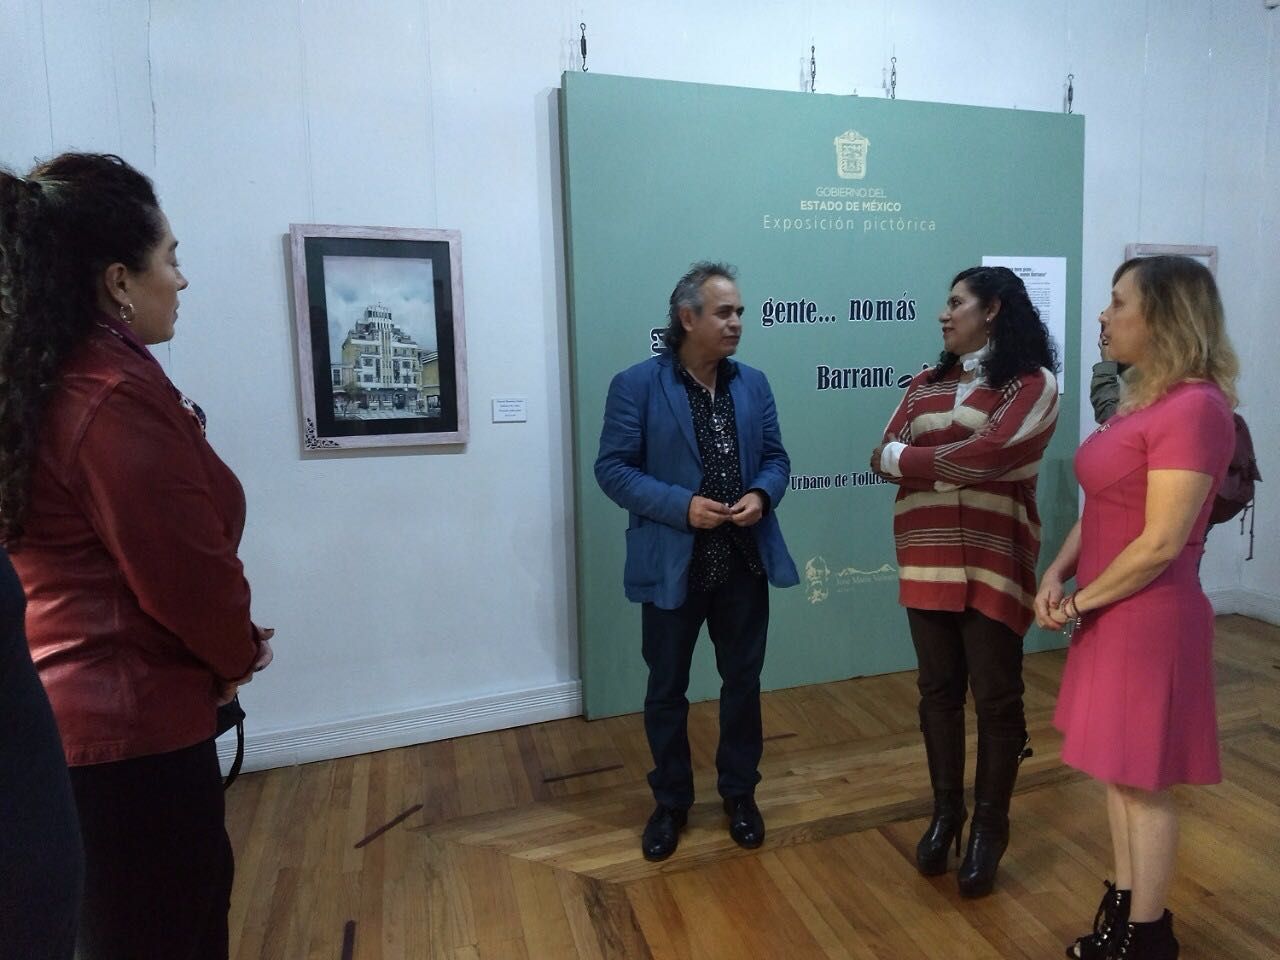 Exhiben exposición del paisajista Manuel barranco en el museo José maría Velasco